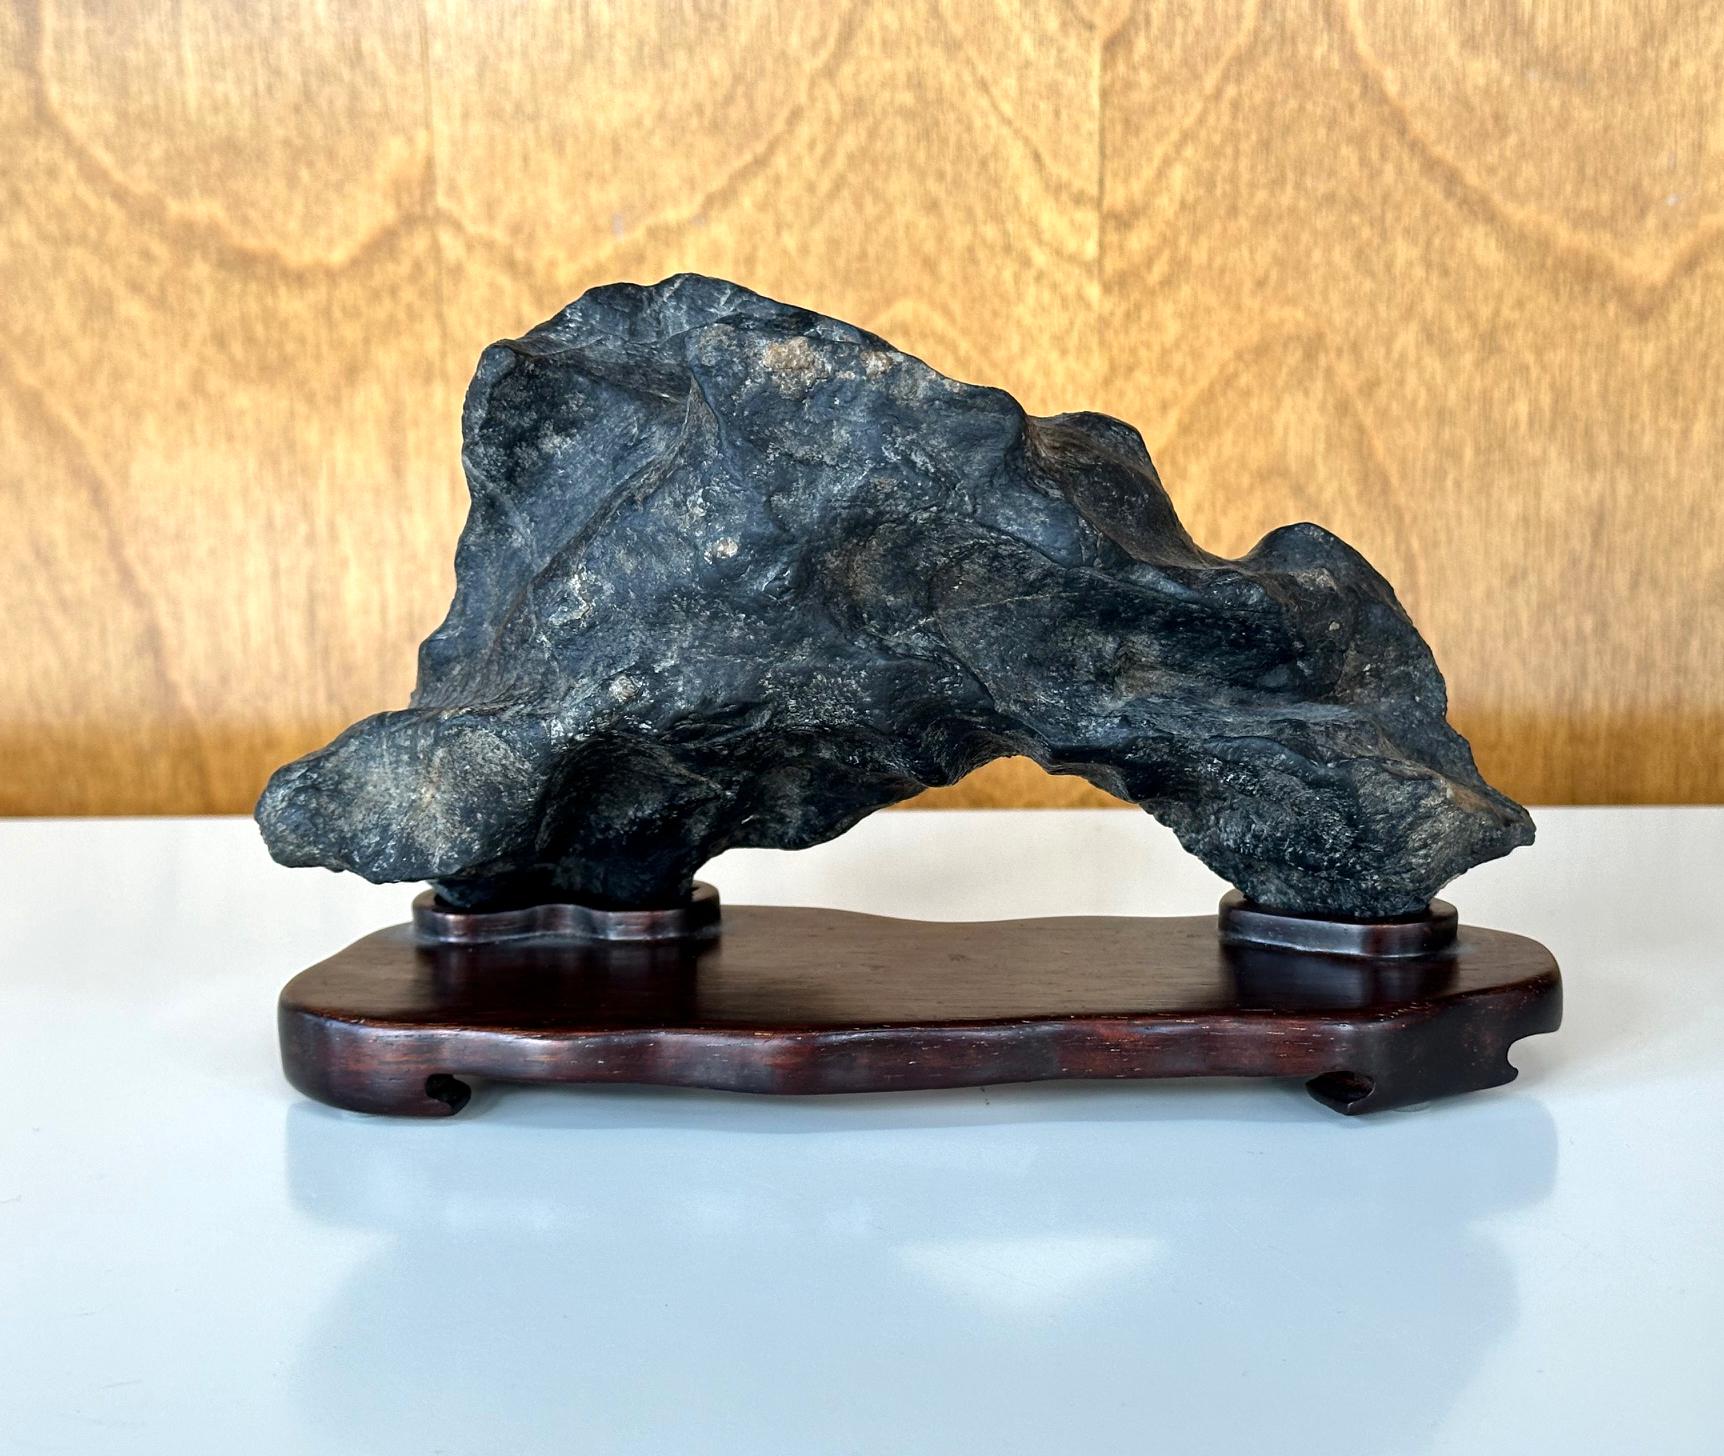 Ein kleiner chinesischer Gelehrtenstein (auch bekannt als Gong Shi, Meditationsstein und Geisterstein) auf einem handgeschnitzten Holzständer aus dem späten 19. Jahrhundert. Das Exemplar ist ein schwarzer Stein vom Typ Lingbi in einer Bogenform, die